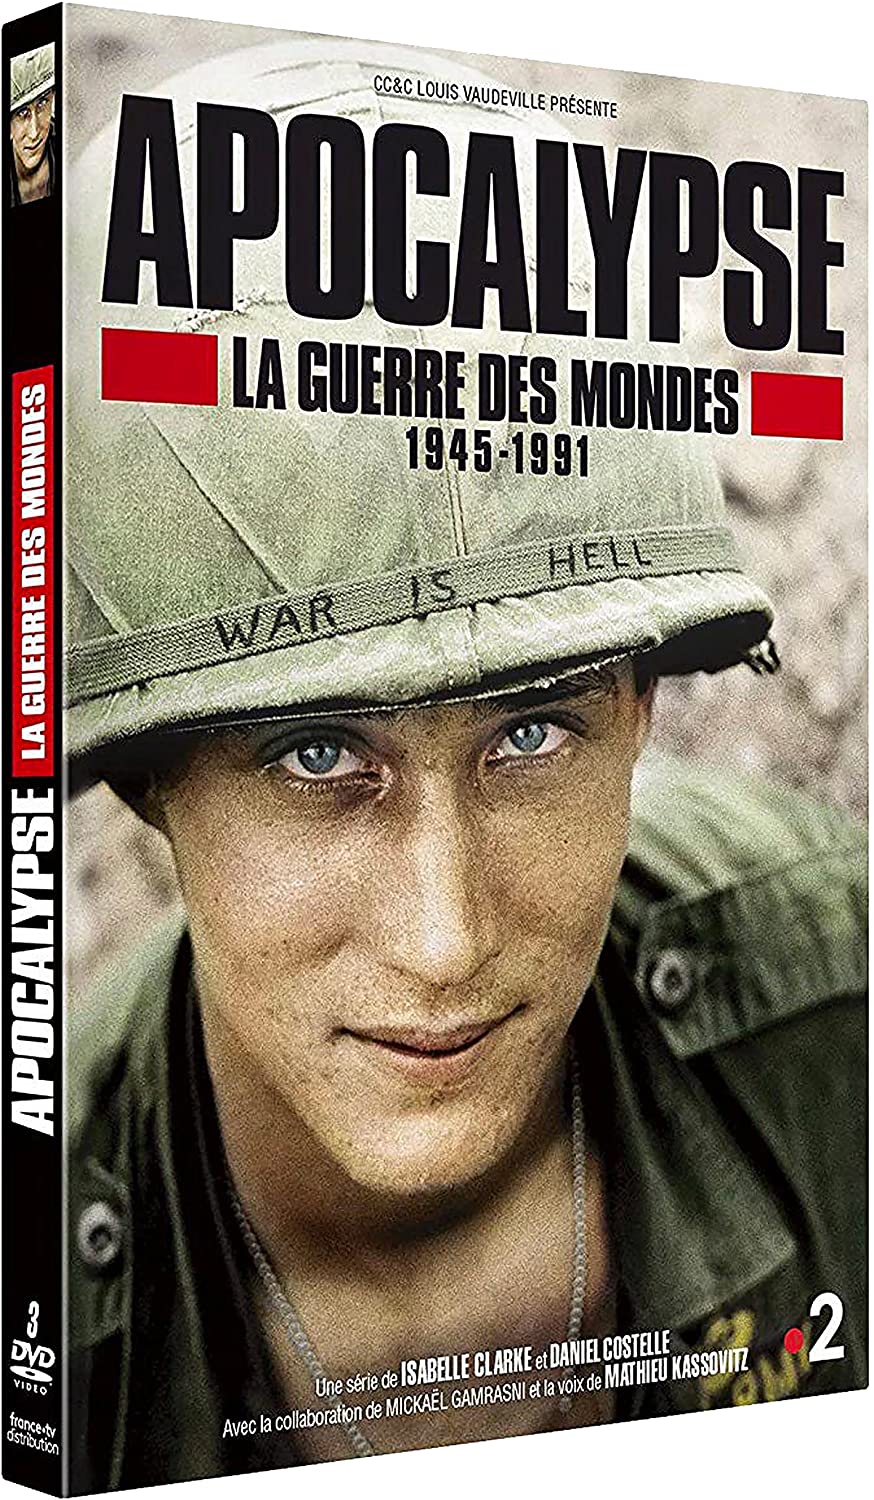 Apocalypse, la guerre des mondes (1945-1991) de Daniel Costelle, Isabelle Clarke pochette dvd